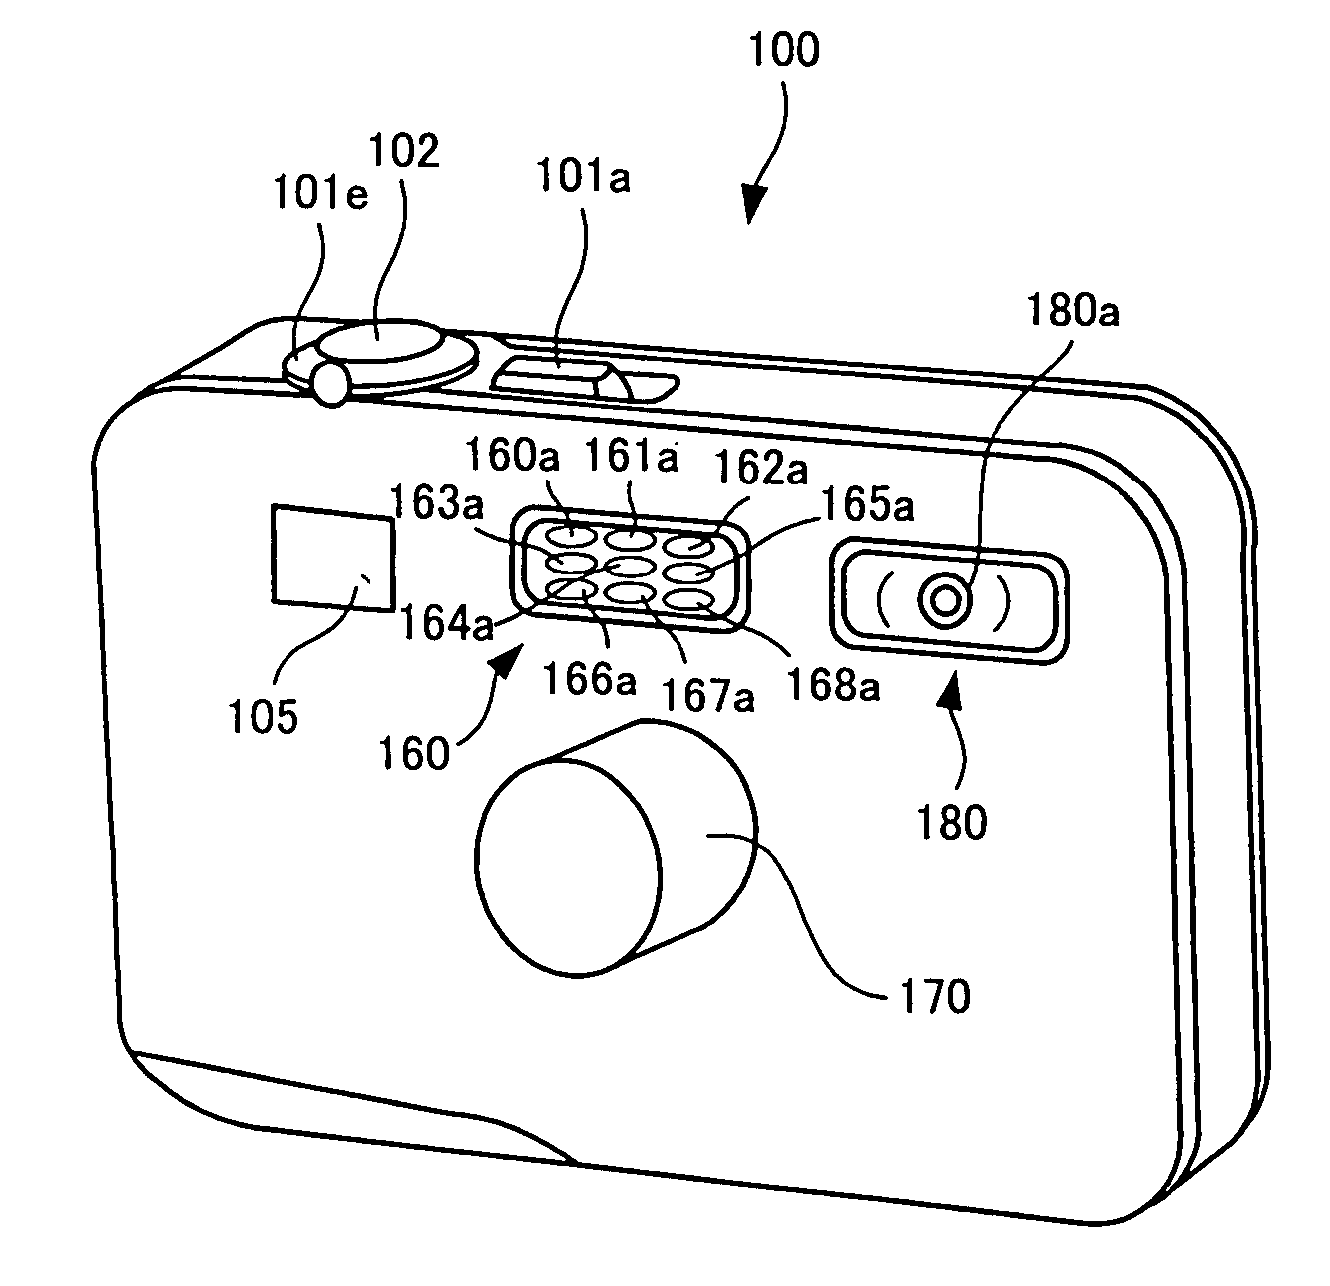 Image-taking apparatus